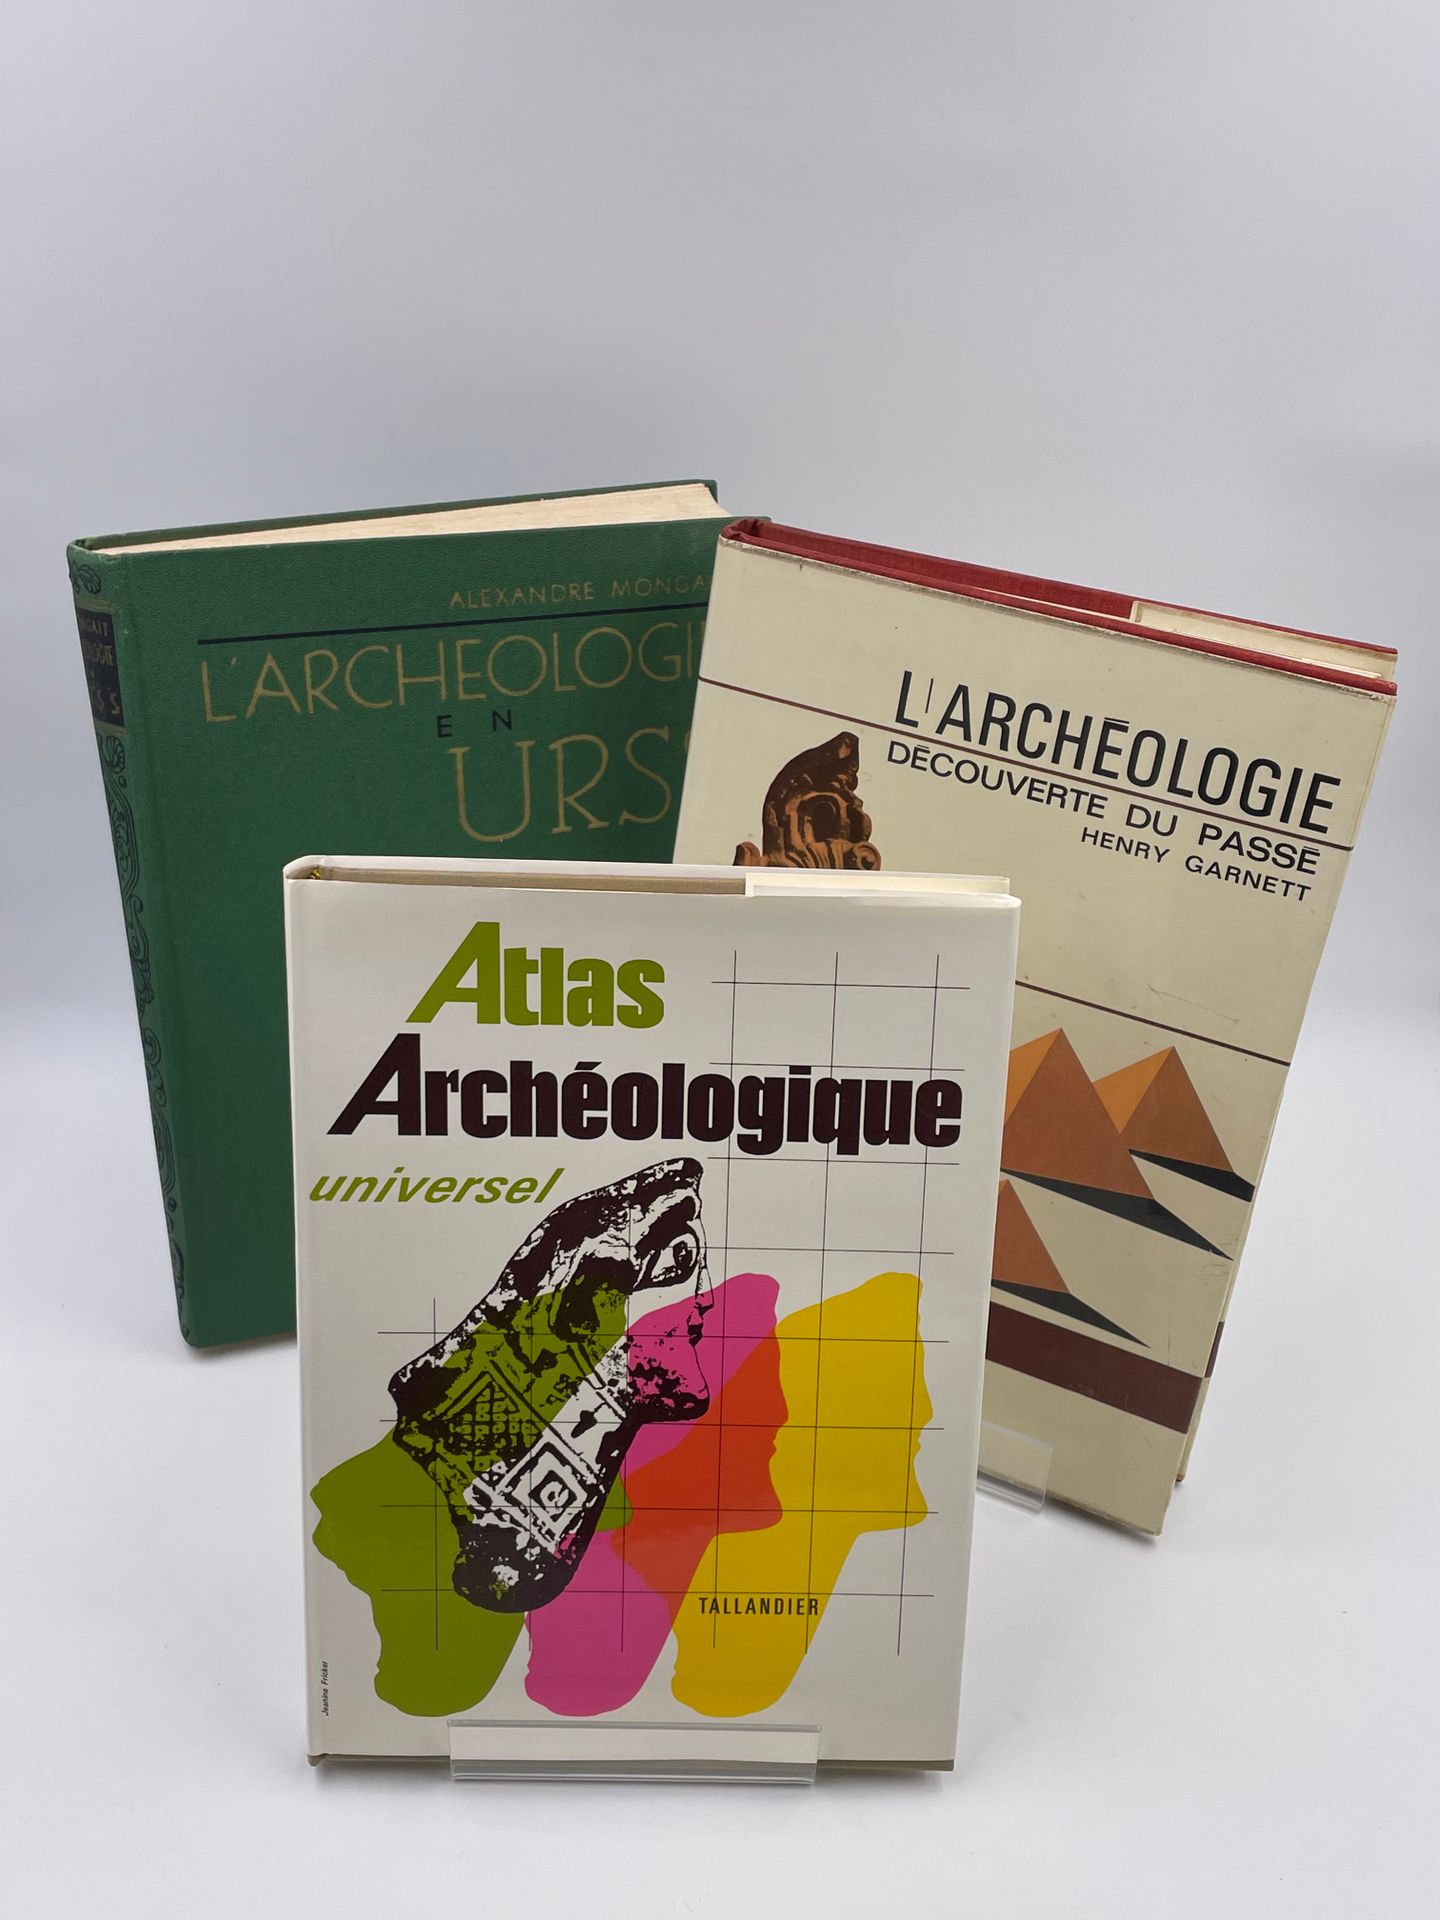 Null 3 volumi: 

- "ATLANTE ARCHEOLOGICO UNIVERSALE", David e Ruth Whitehouse, 1&hellip;